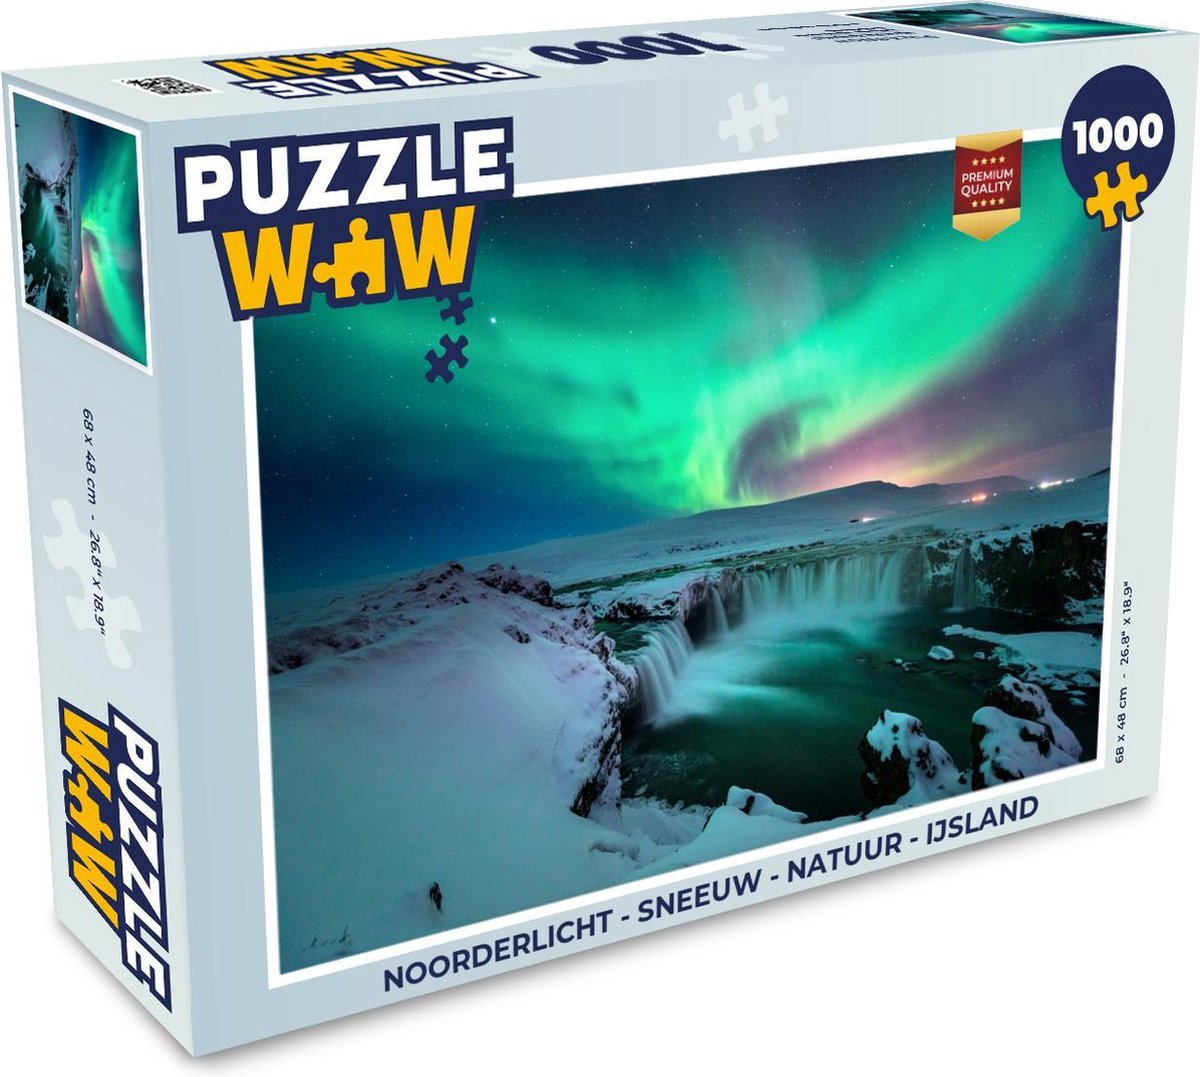 Afbeelding van product PuzzleWow  Puzzel Noorderlicht - Sneeuw - Natuur - IJsland - Legpuzzel - Puzzel 1000 stukjes volwassenen